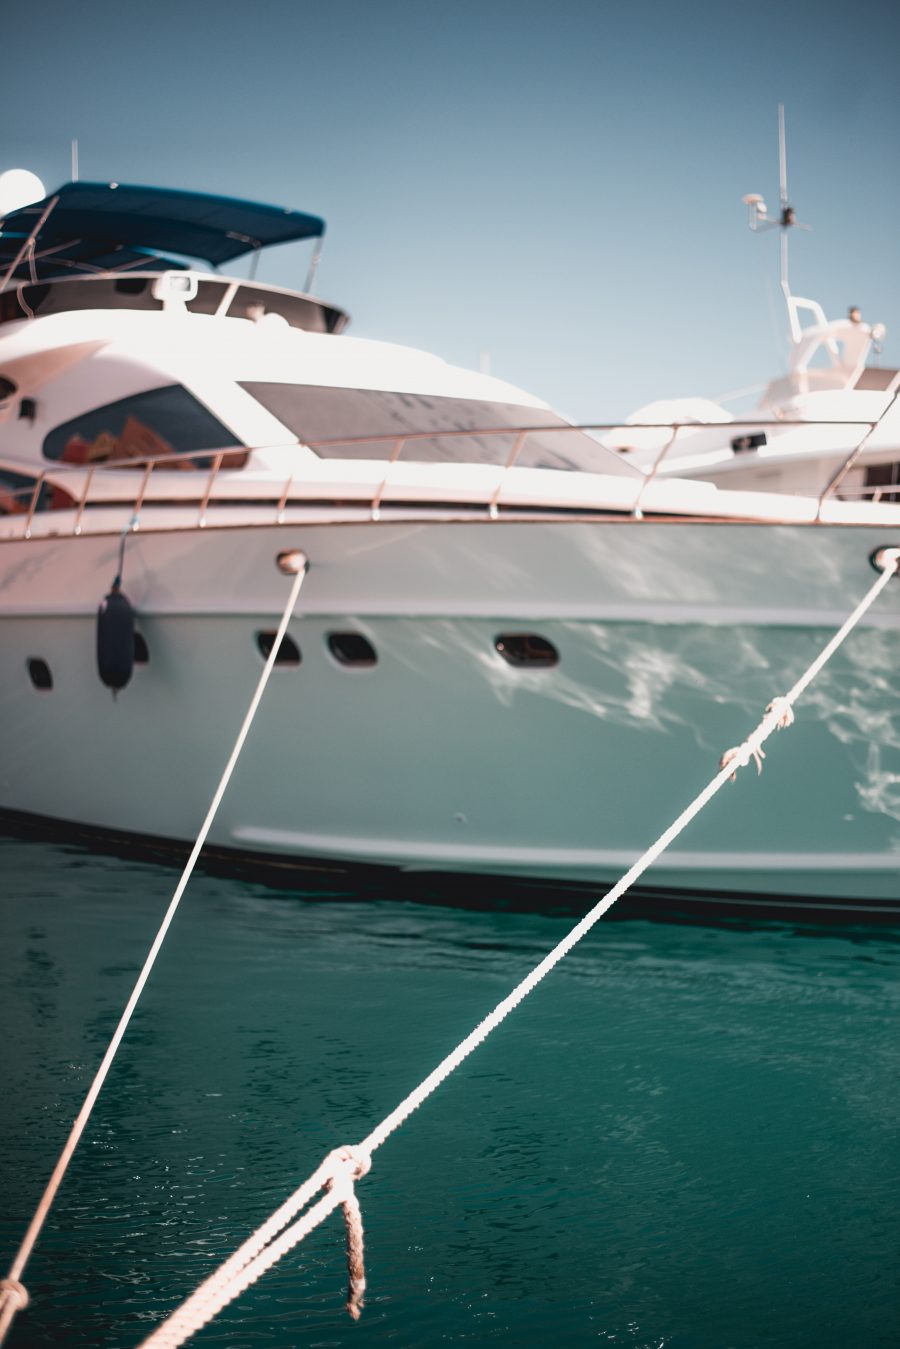 Met welke kosten moet je rekening houden als je een eigen boot wilt kopen?